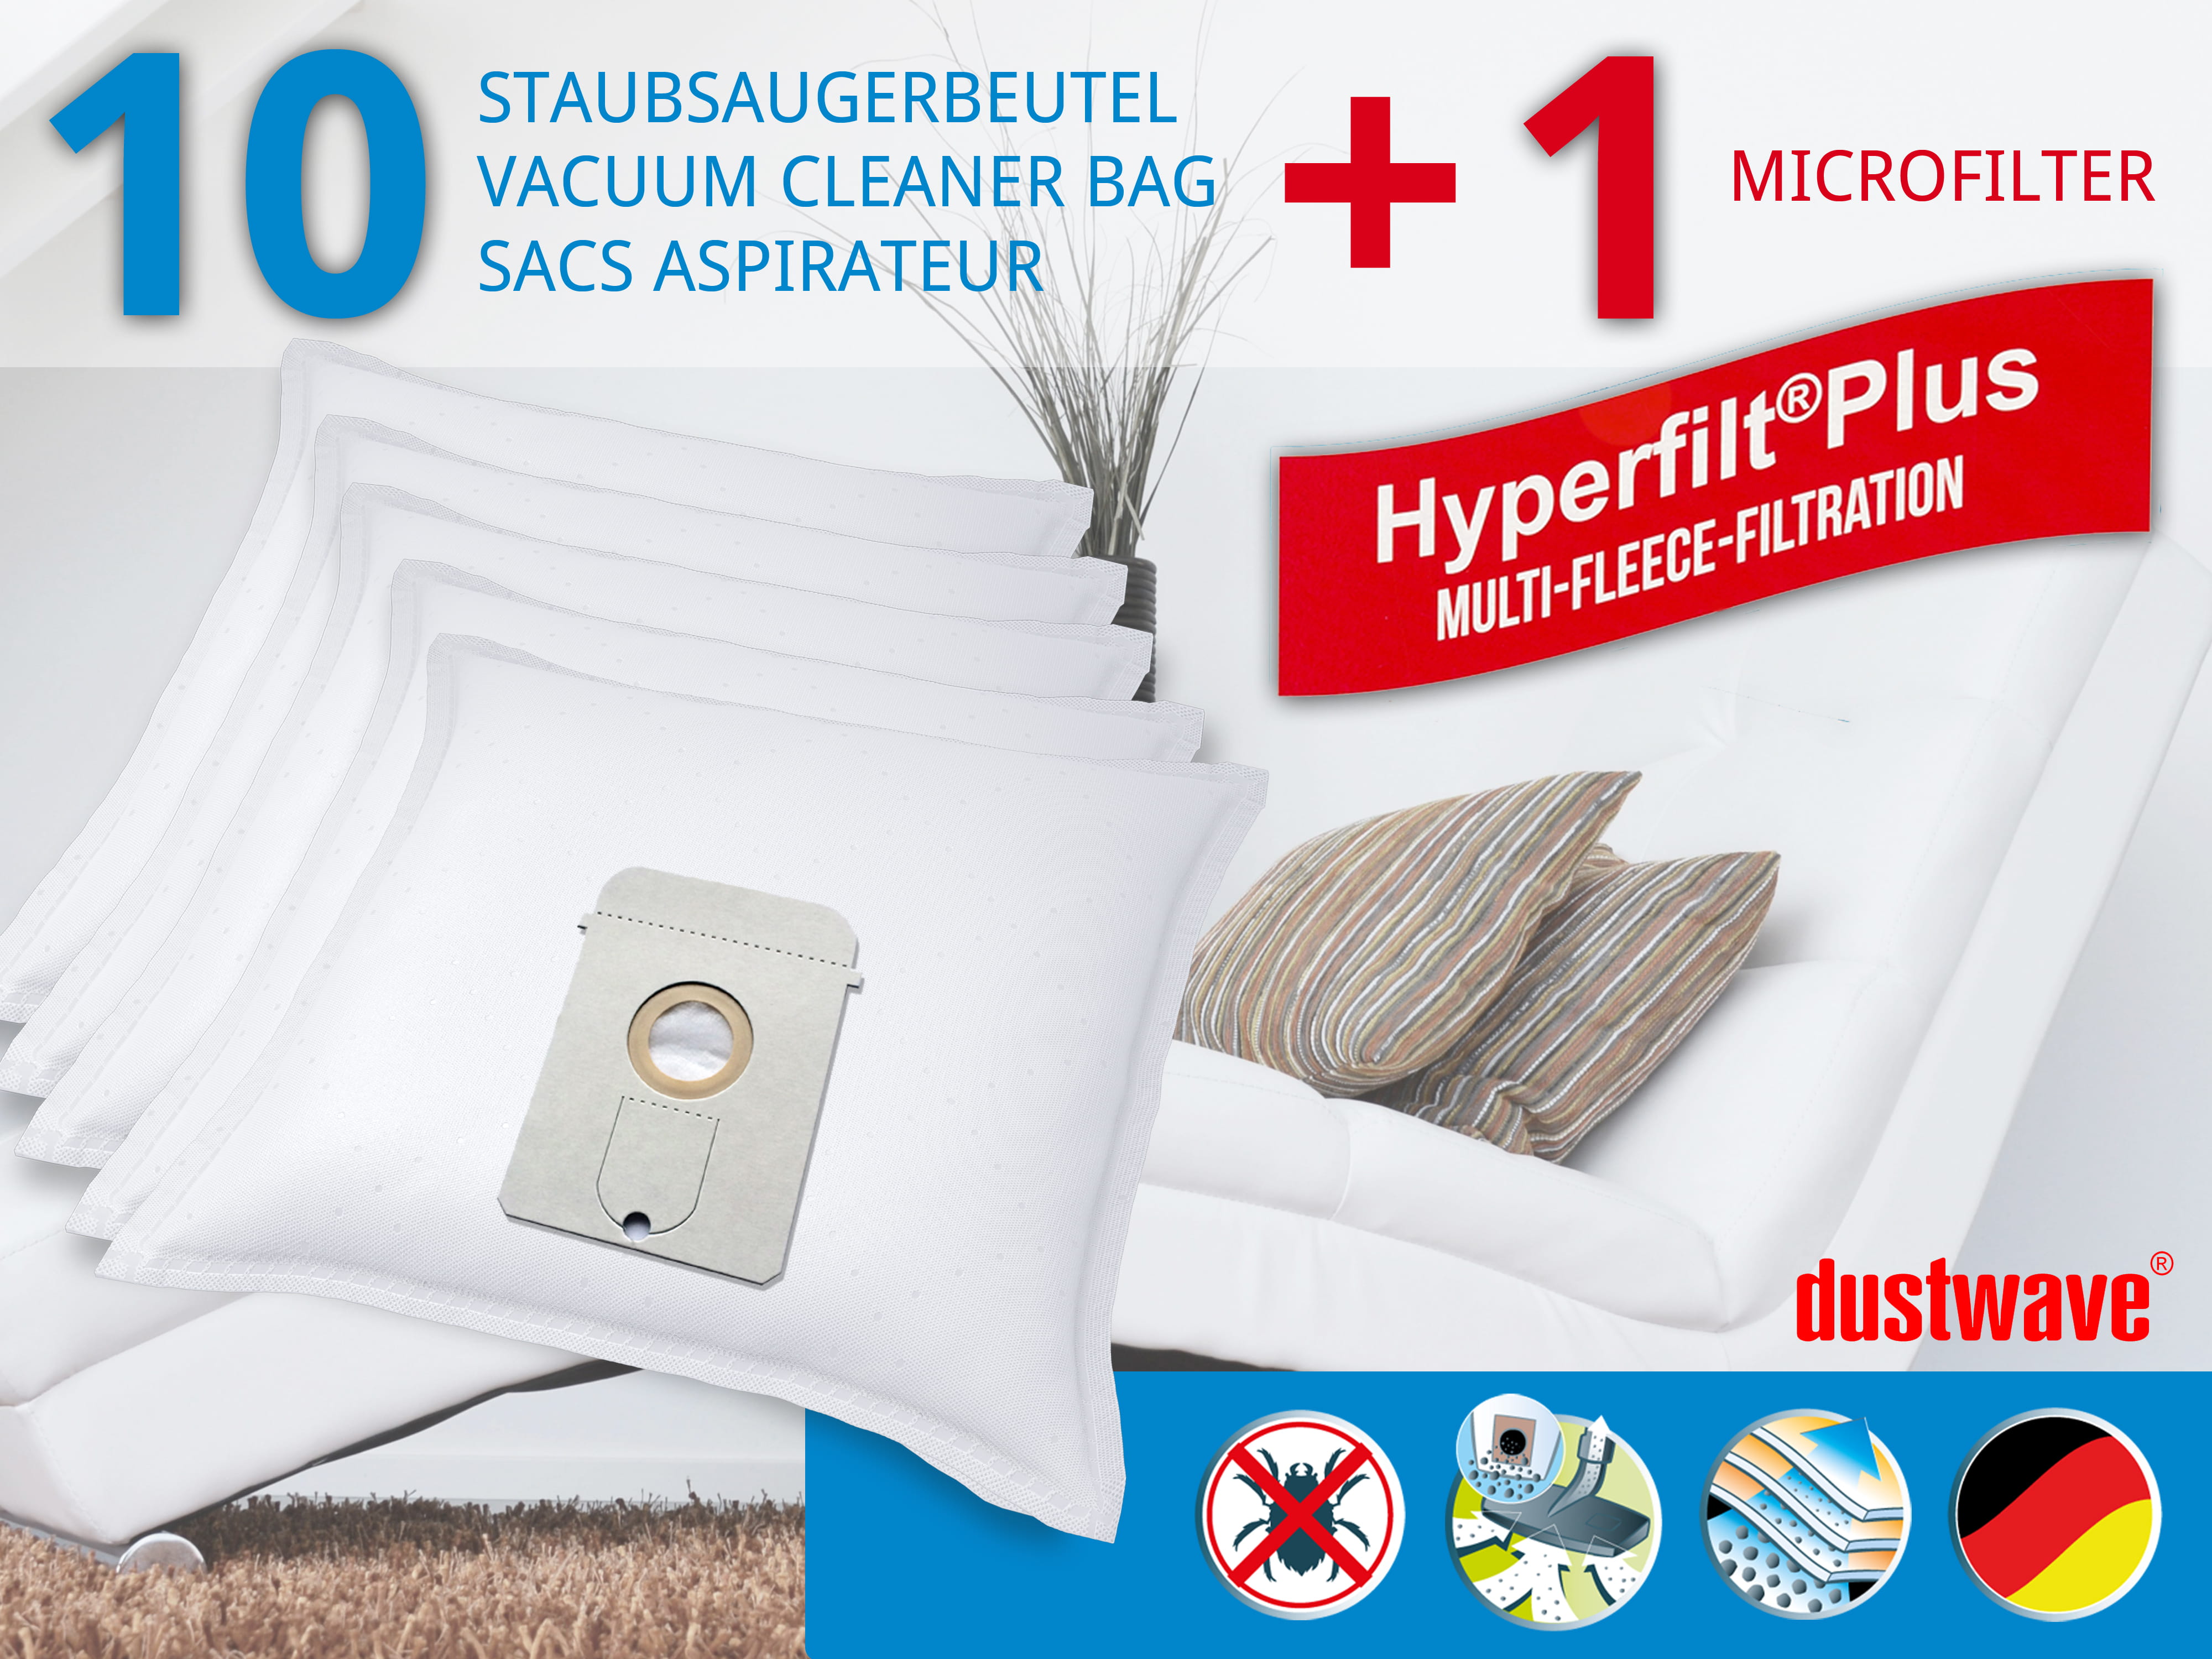 Dustwave® 10 Staubsaugerbeutel für AEG Vampyr 7500 Electronic - hocheffizient, mehrlagiges Mikrovlies mit Hygieneverschluss - Made in Germany